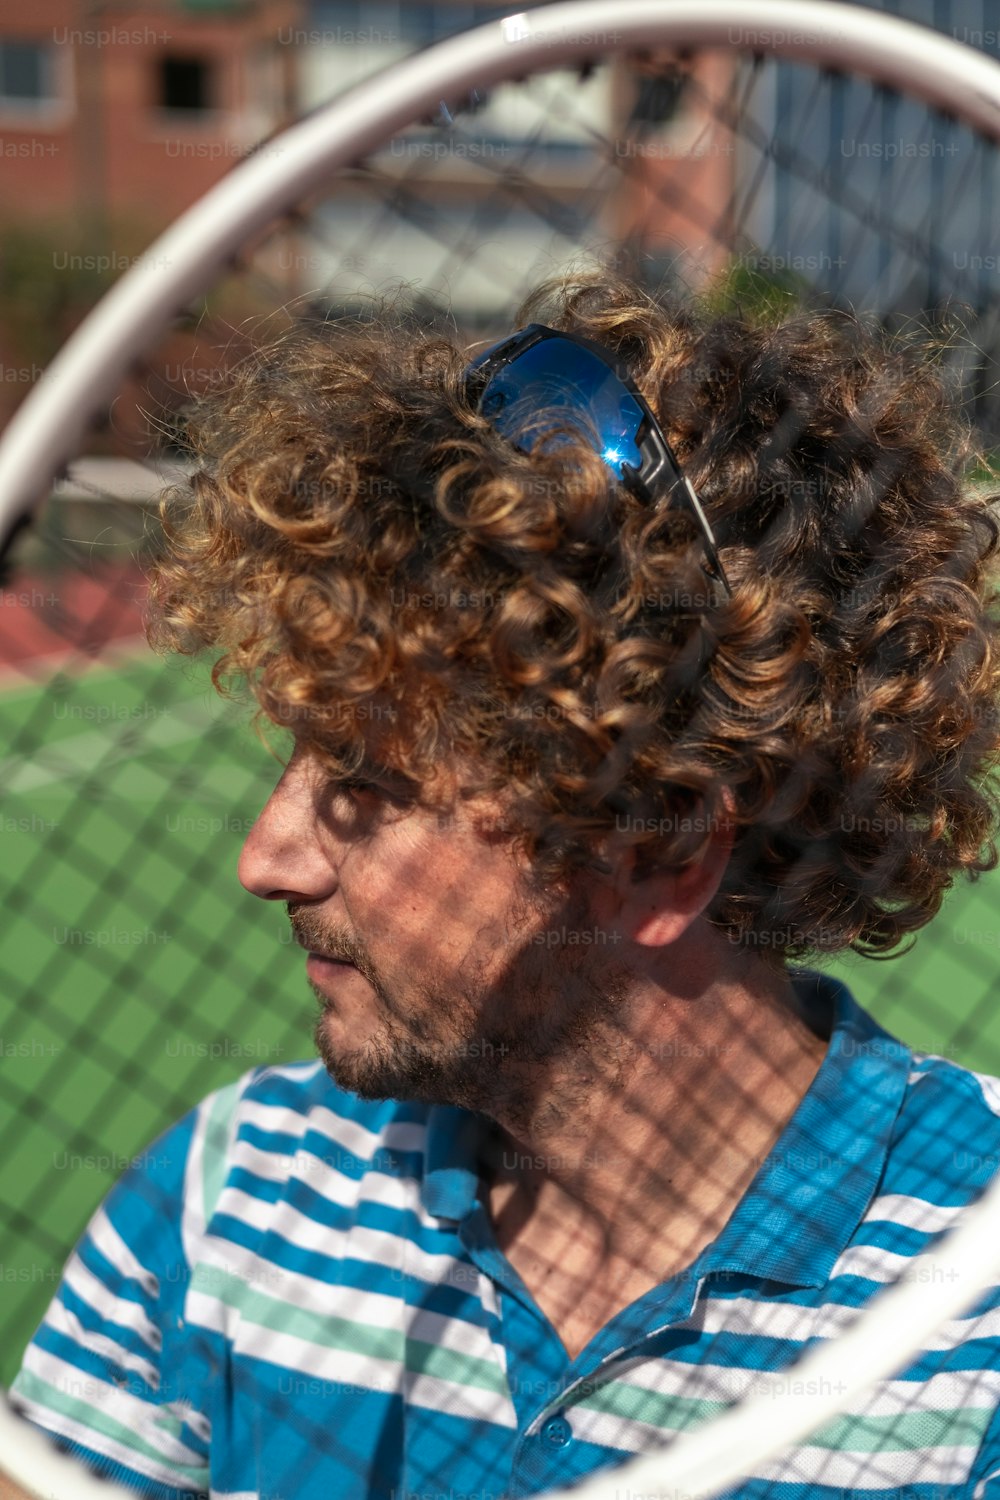 Un homme aux cheveux bouclés tenant une raquette de tennis